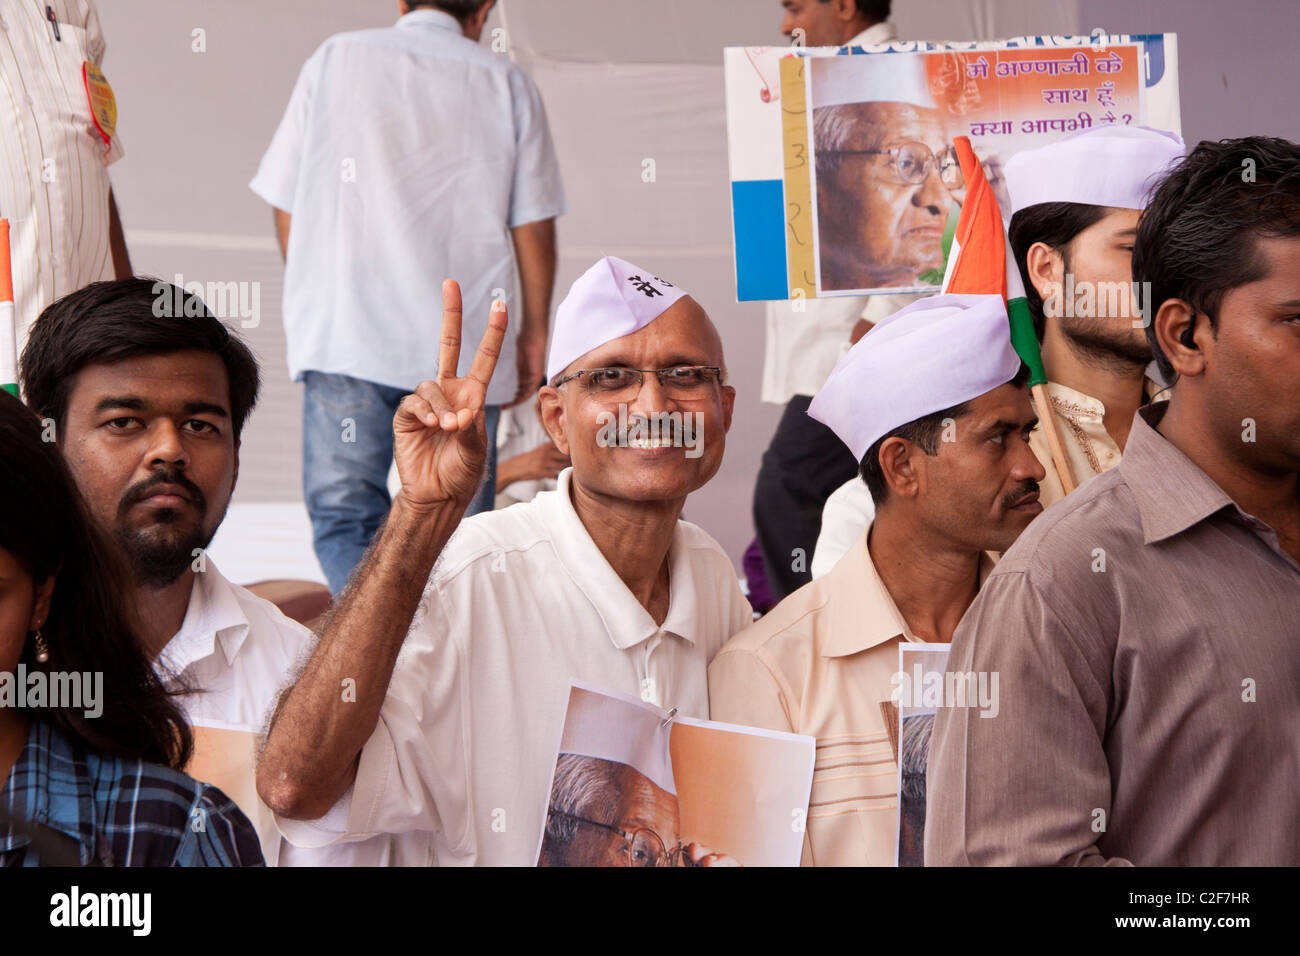 A supporter of Anna Hazare's anti corruption rally showing victory sign at Azad Maidan in Mumbai (Bombay), Maharashtra, India. Stock Photo